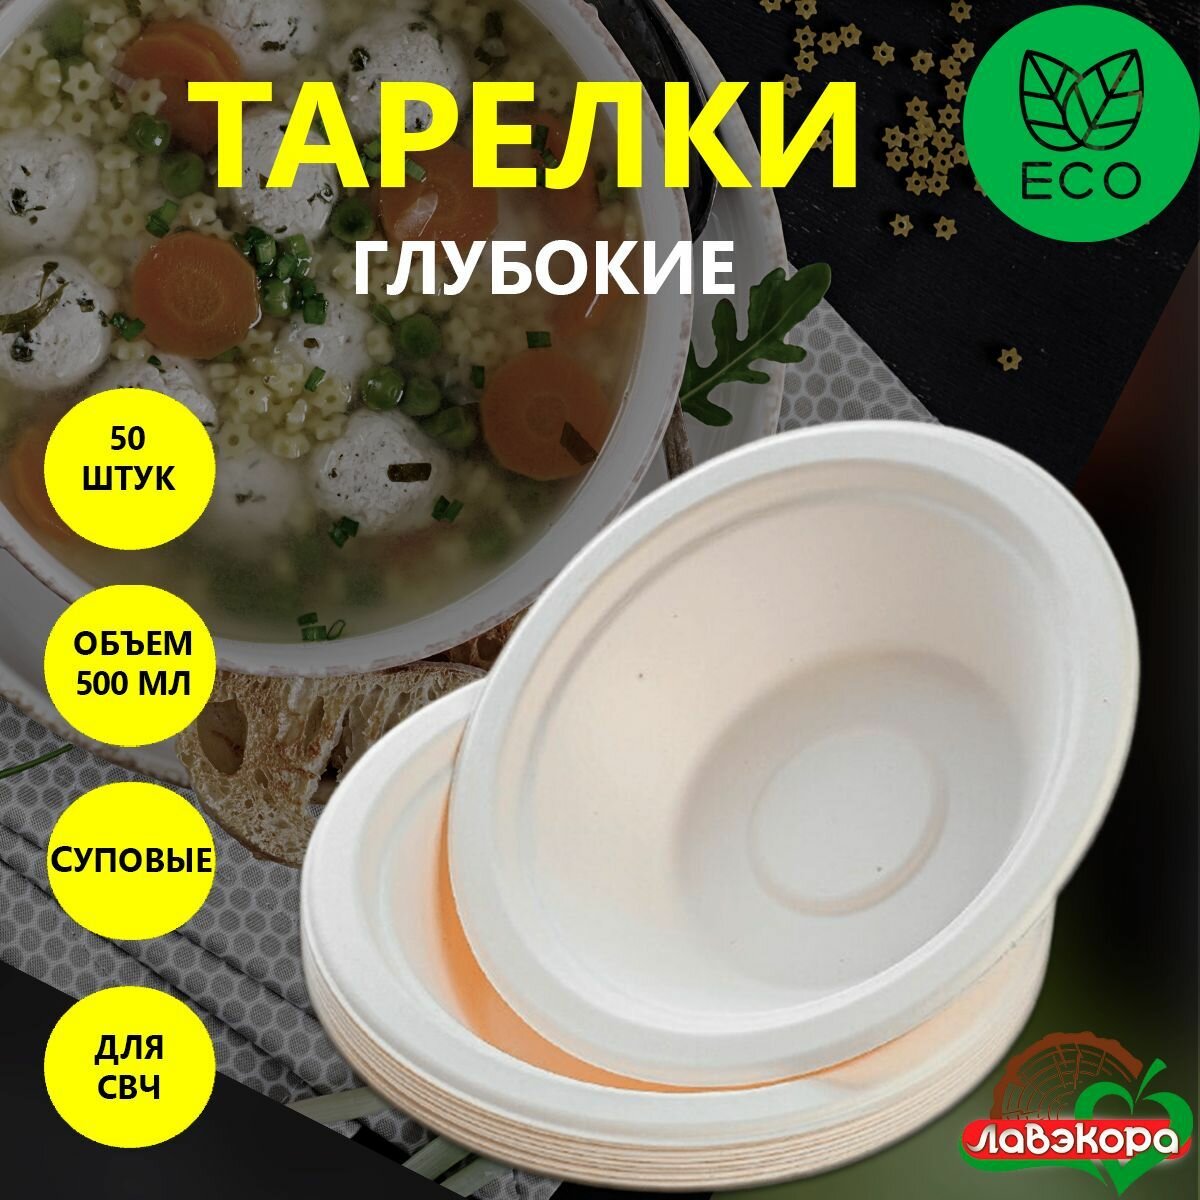 Одноразовые тарелки глубокие суповые Лавэкора, комплект 50 шт, объемом 500 мл, биоразлагаемые ЭКО из древесной целлюлозы для холодных и горячих блюд.